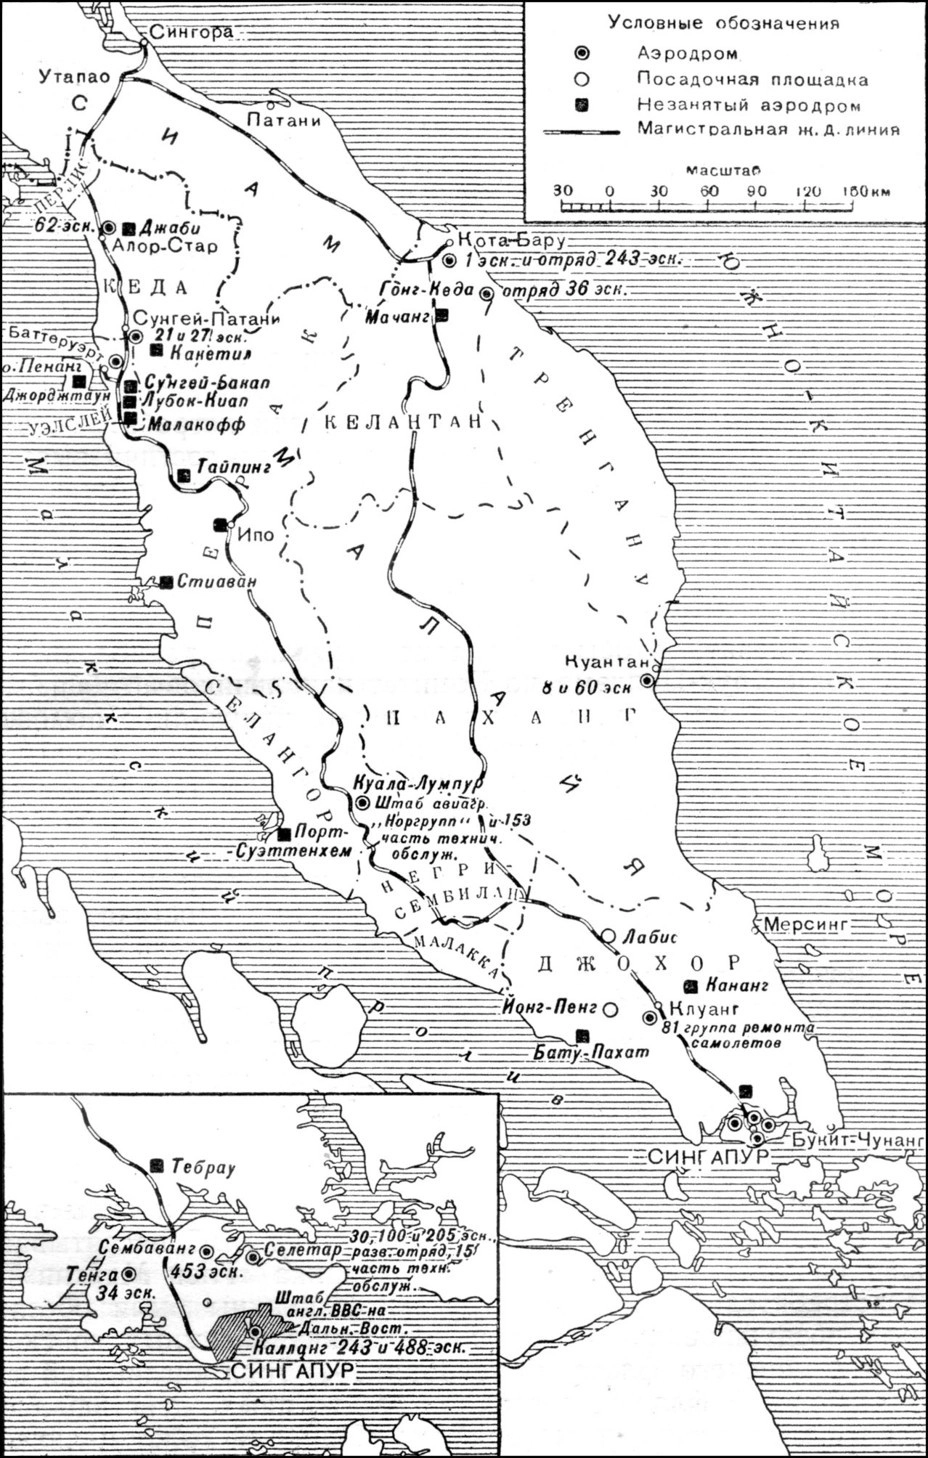 Аэродромная сеть Малайи и размещение британских ВВС на 8 декабря 1941 года Д. Ричардс, Х. Сондерс. Военно-воздушные силы Великобритании во Второй мировой войне